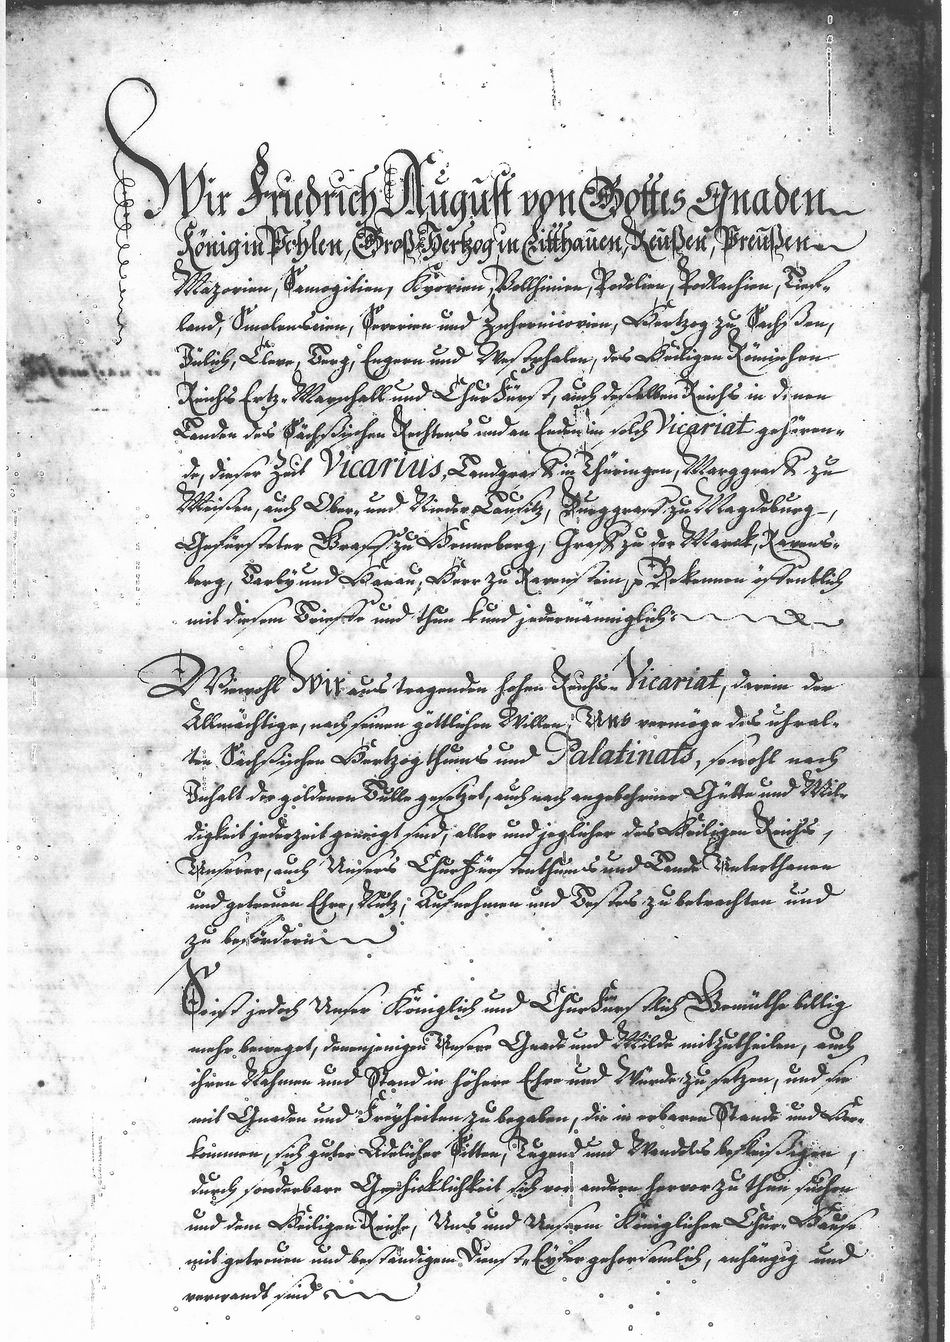 Lettres de noblesse pour Louis de Silvestre et Nicolas-Charles de Silvestre - Page 1/6